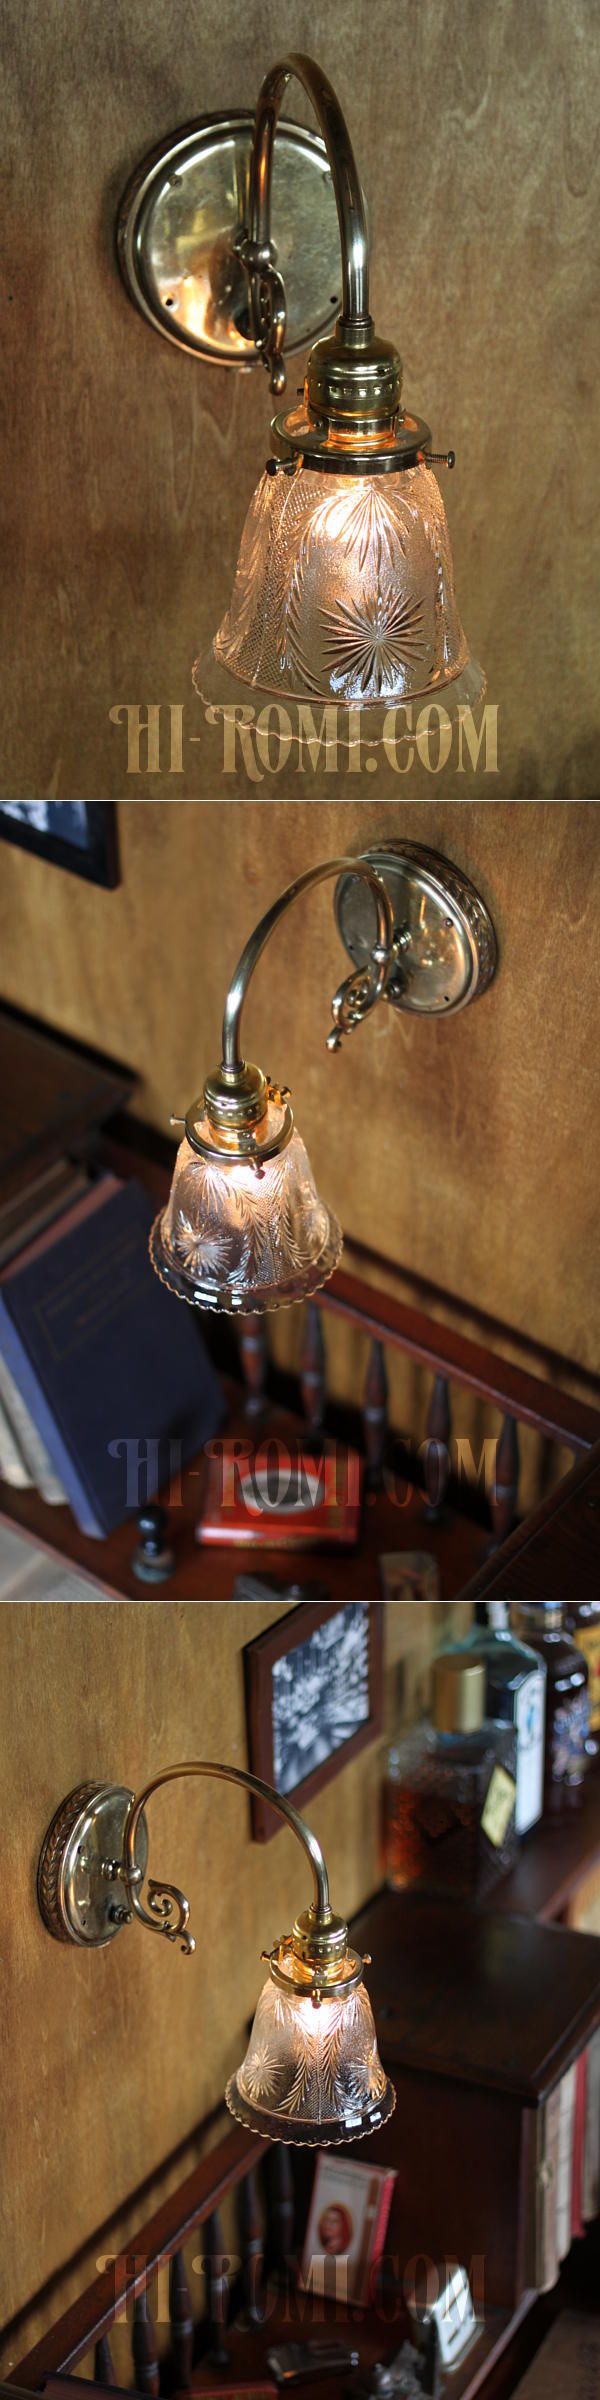 ヴィンテージコロニアルクリアガラス草花柄カットシェードブラケットランプ/ヴィクトリアン壁照明